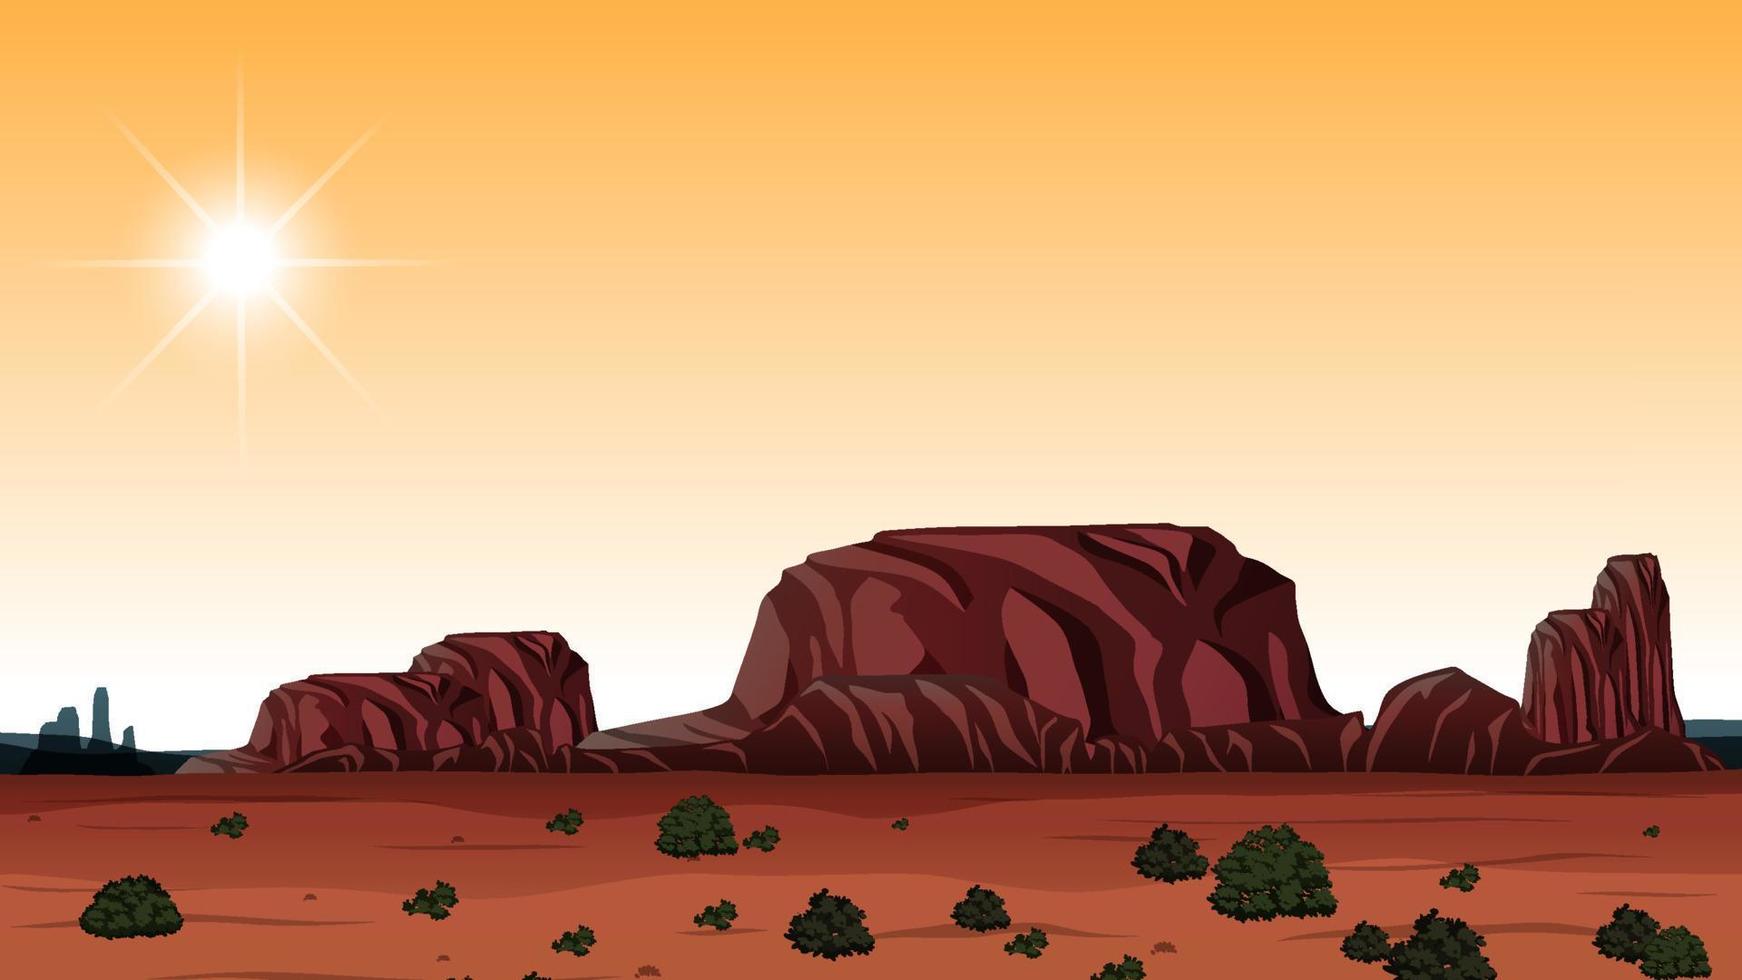 design em miniatura com paisagem do grand canyon vetor